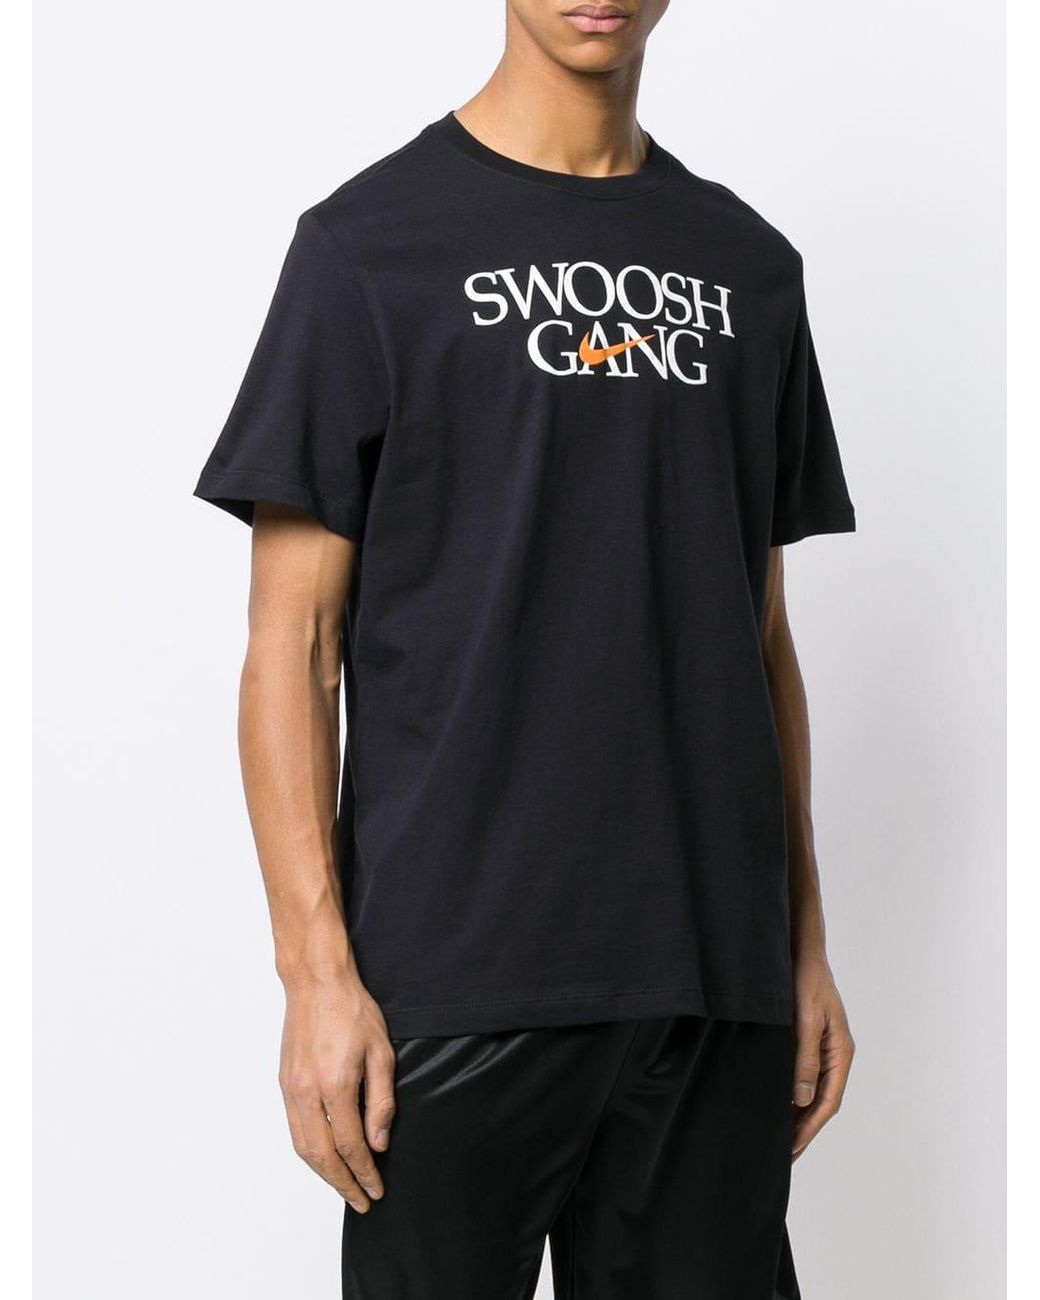 Футболка gang. Футболка Nike Street gang. Nike Swoosh Taped t Shirt - in stock. Nike Swoosh ASOS футболка. Nike футболка XXL.